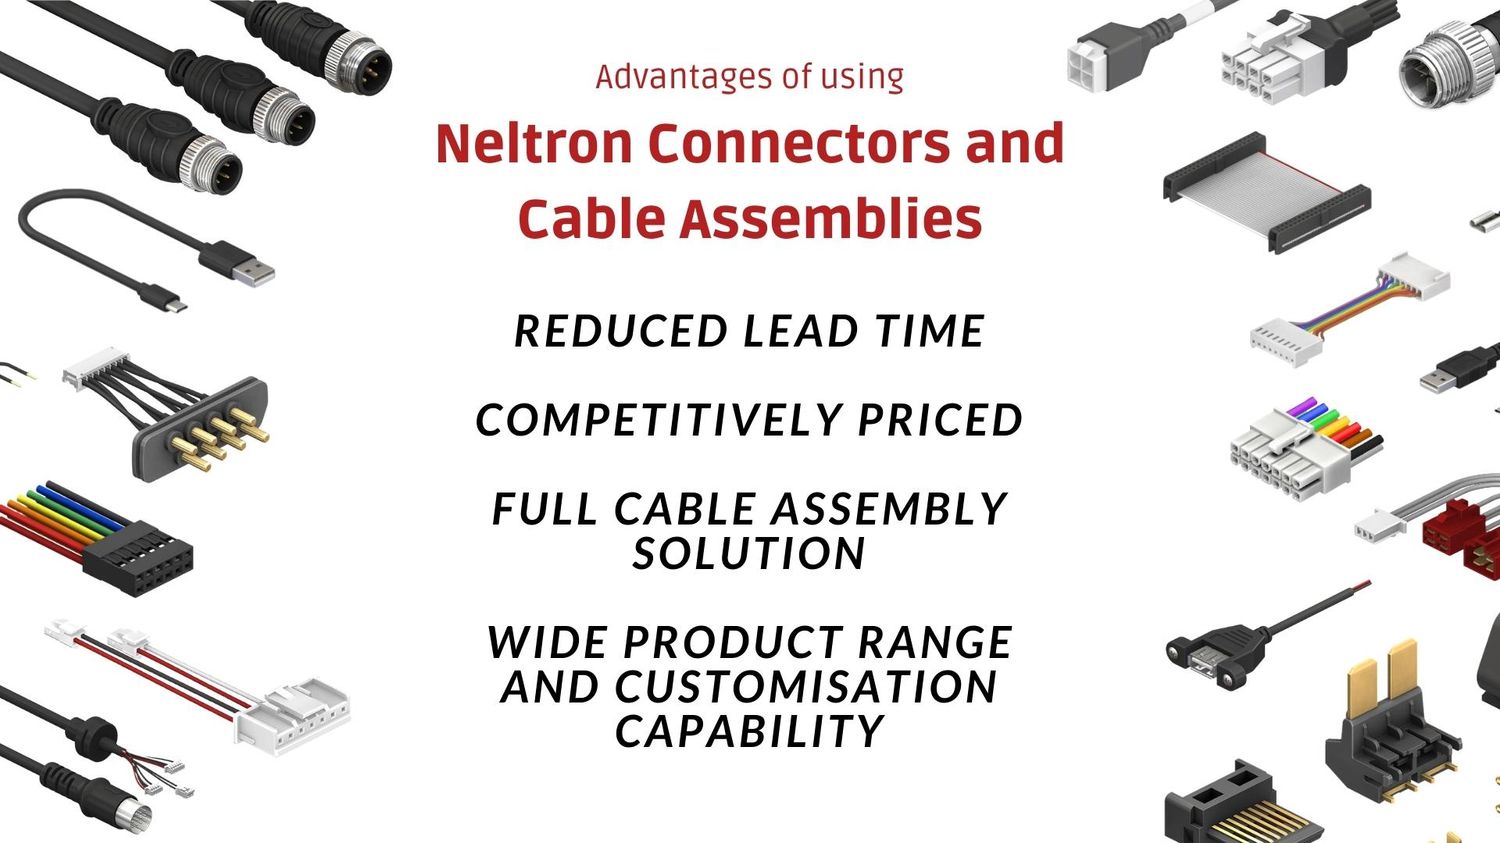 Neltron Connectors Advantages